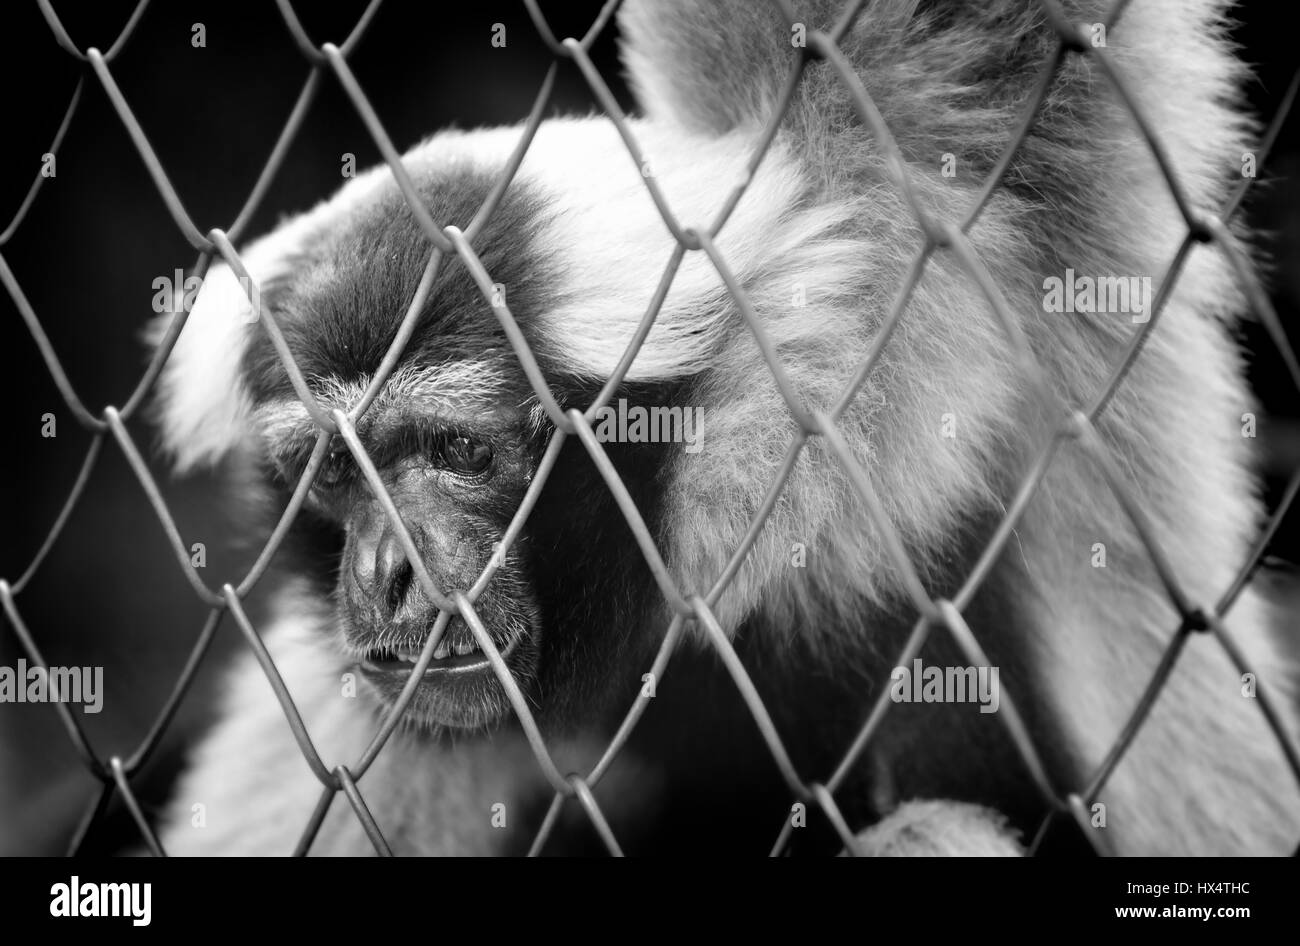 BW Vita del monky nella gabbia,purtroppo e hai bisogno di aiuto per foto in interni poco illuminati. Foto Stock